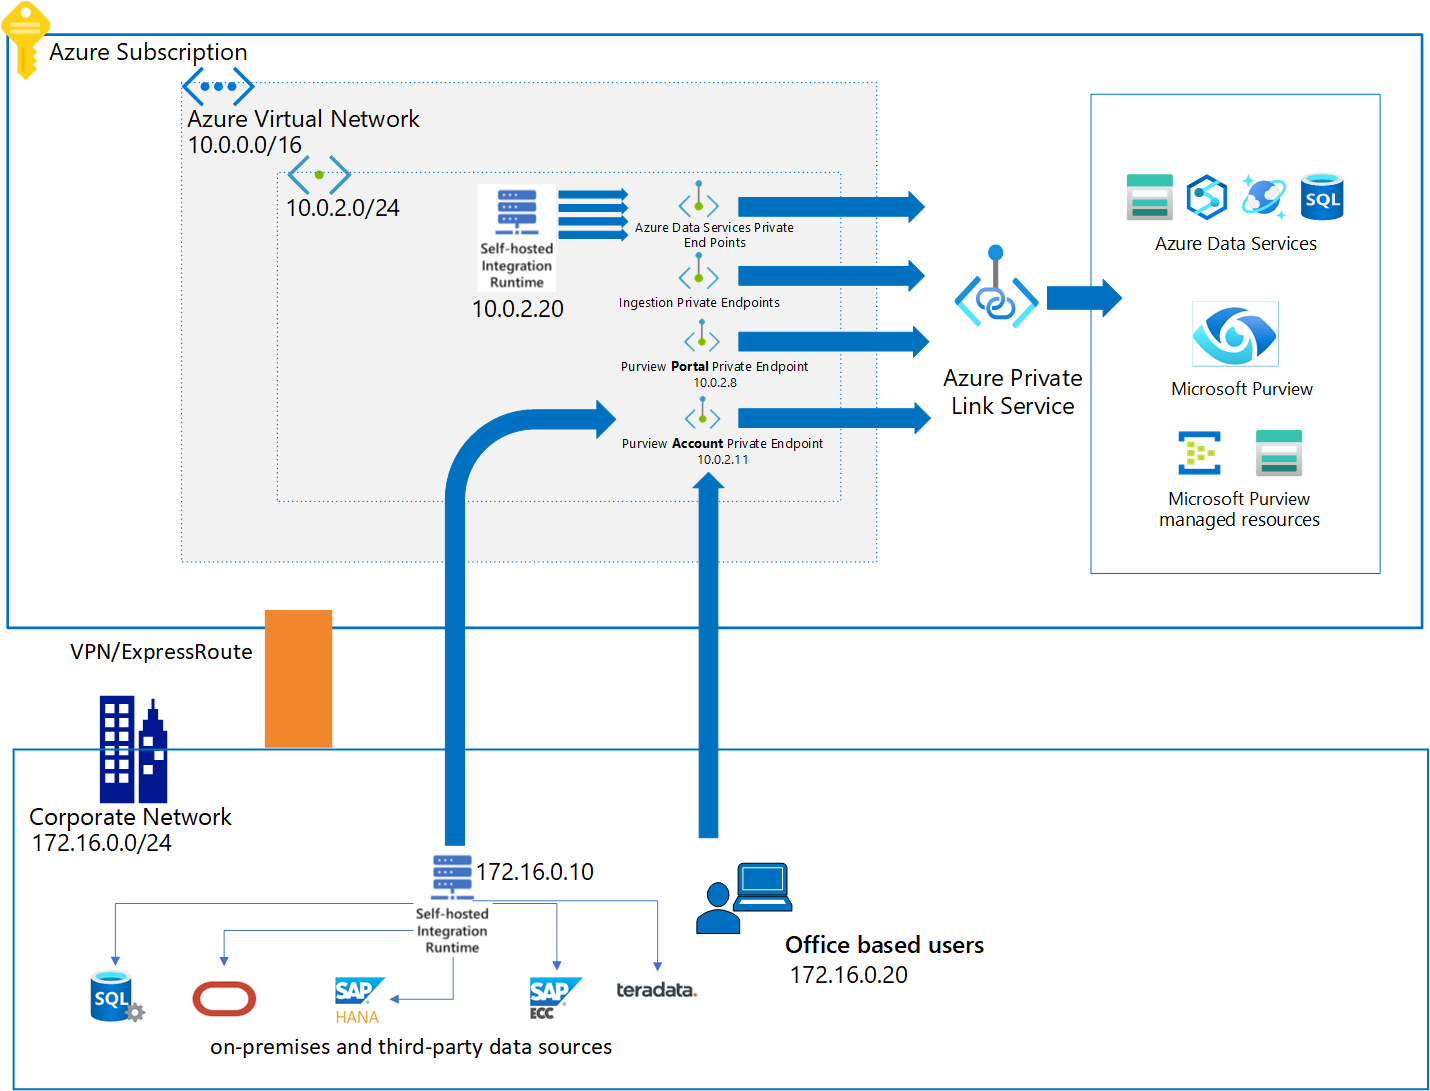 显示 Microsoft Purview 和专用链接体系结构的图表。